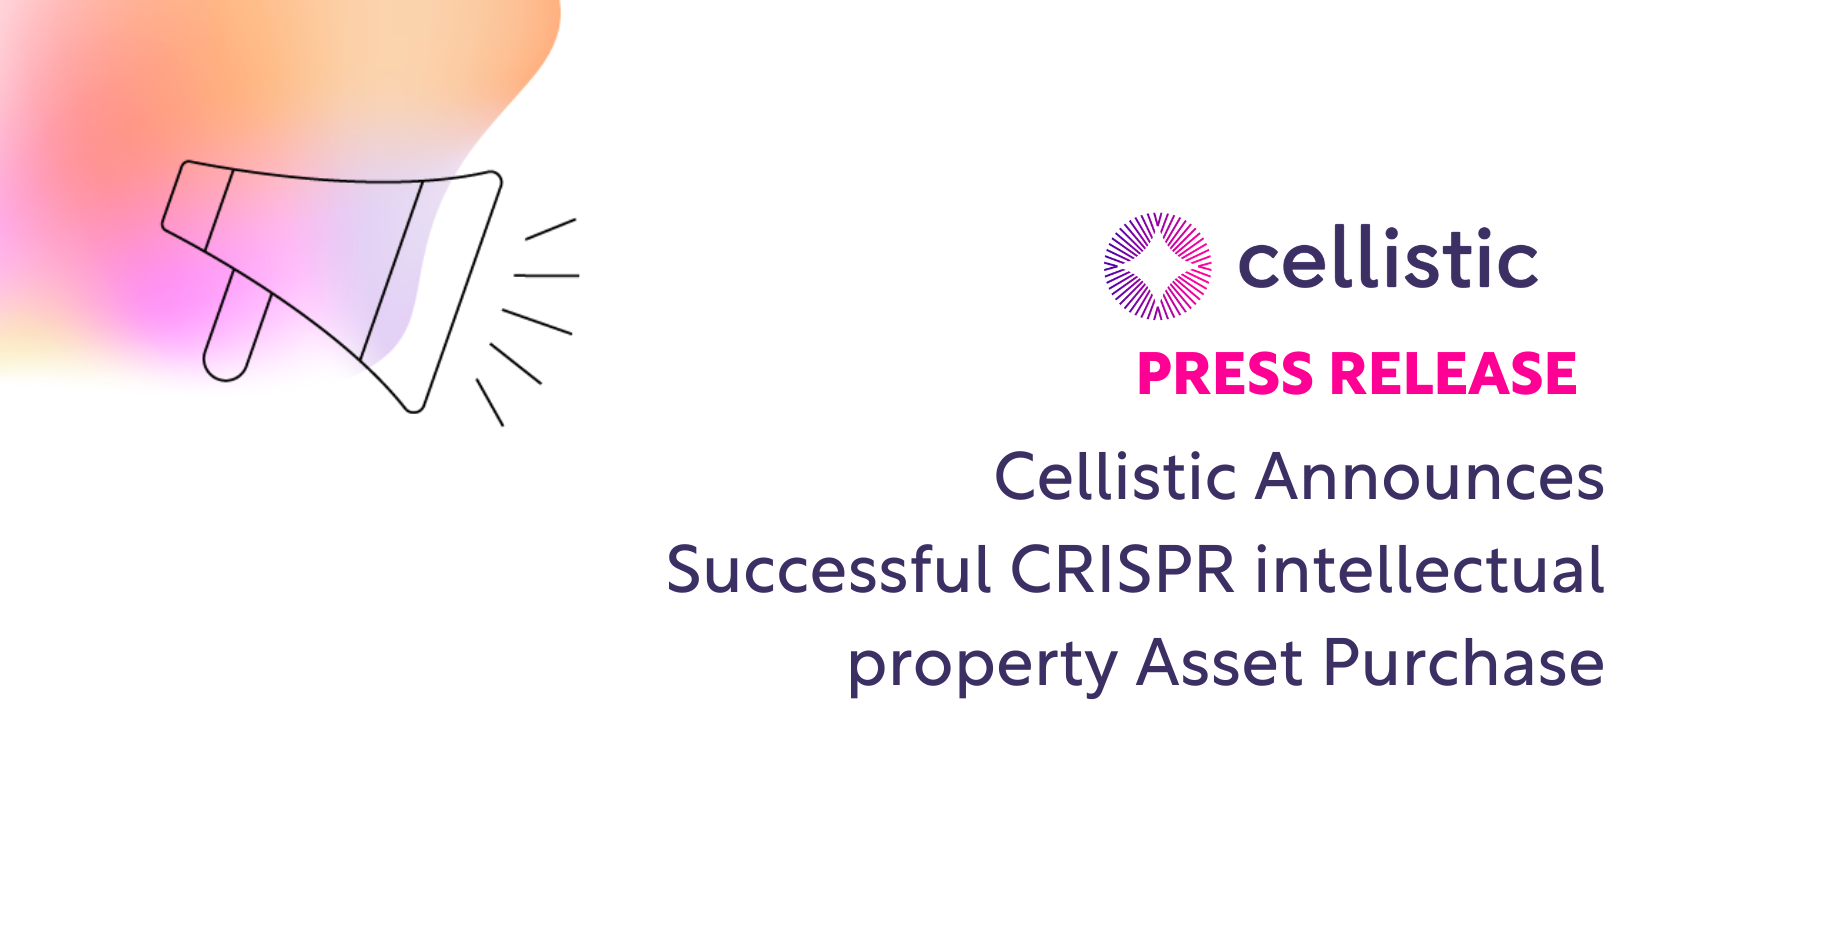 Cellistic Announces Successful CRISPR intellectual property Asset Purchase